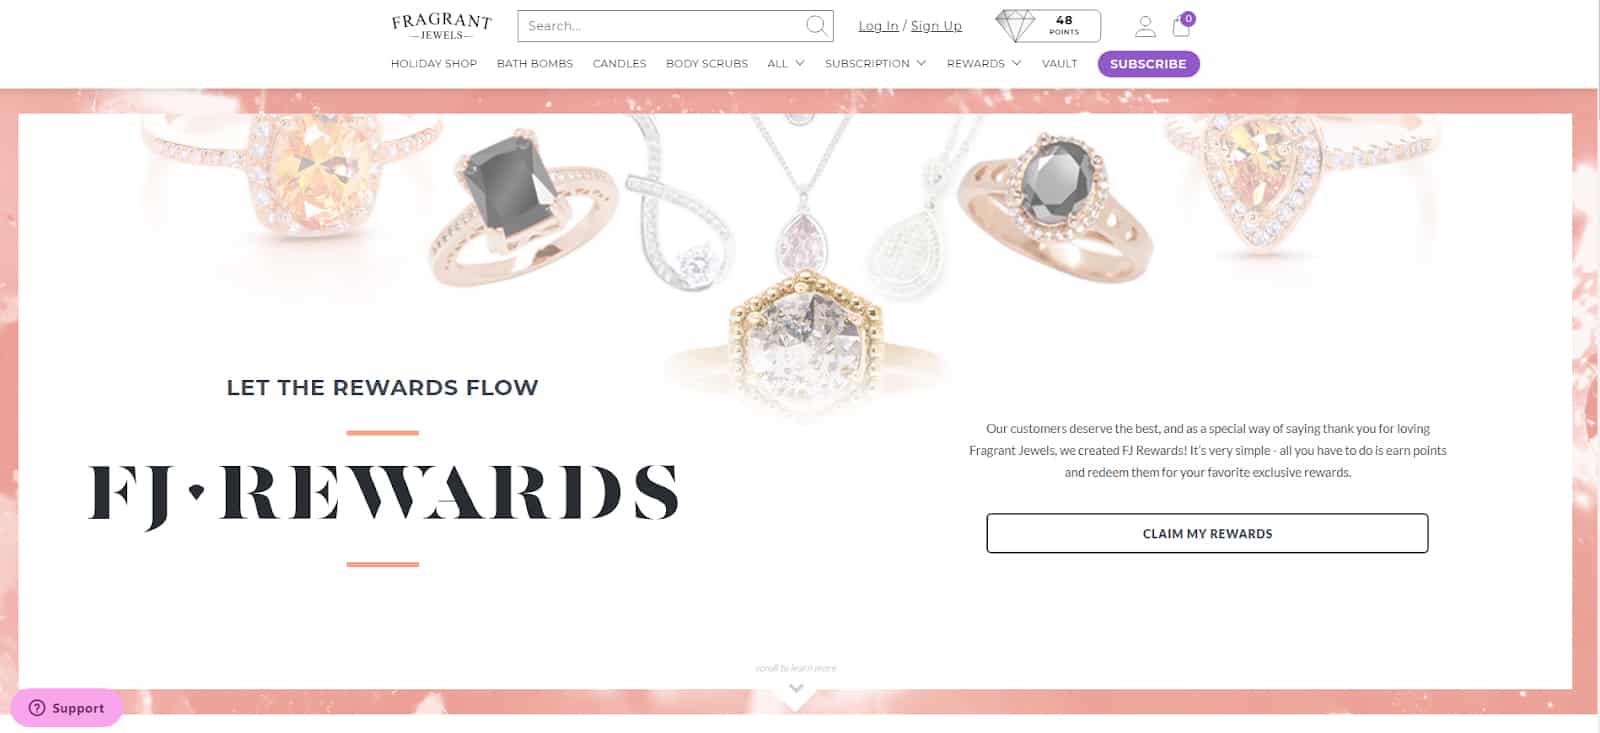 香氛珠宝的主页与顾客奖励按钮的形象。